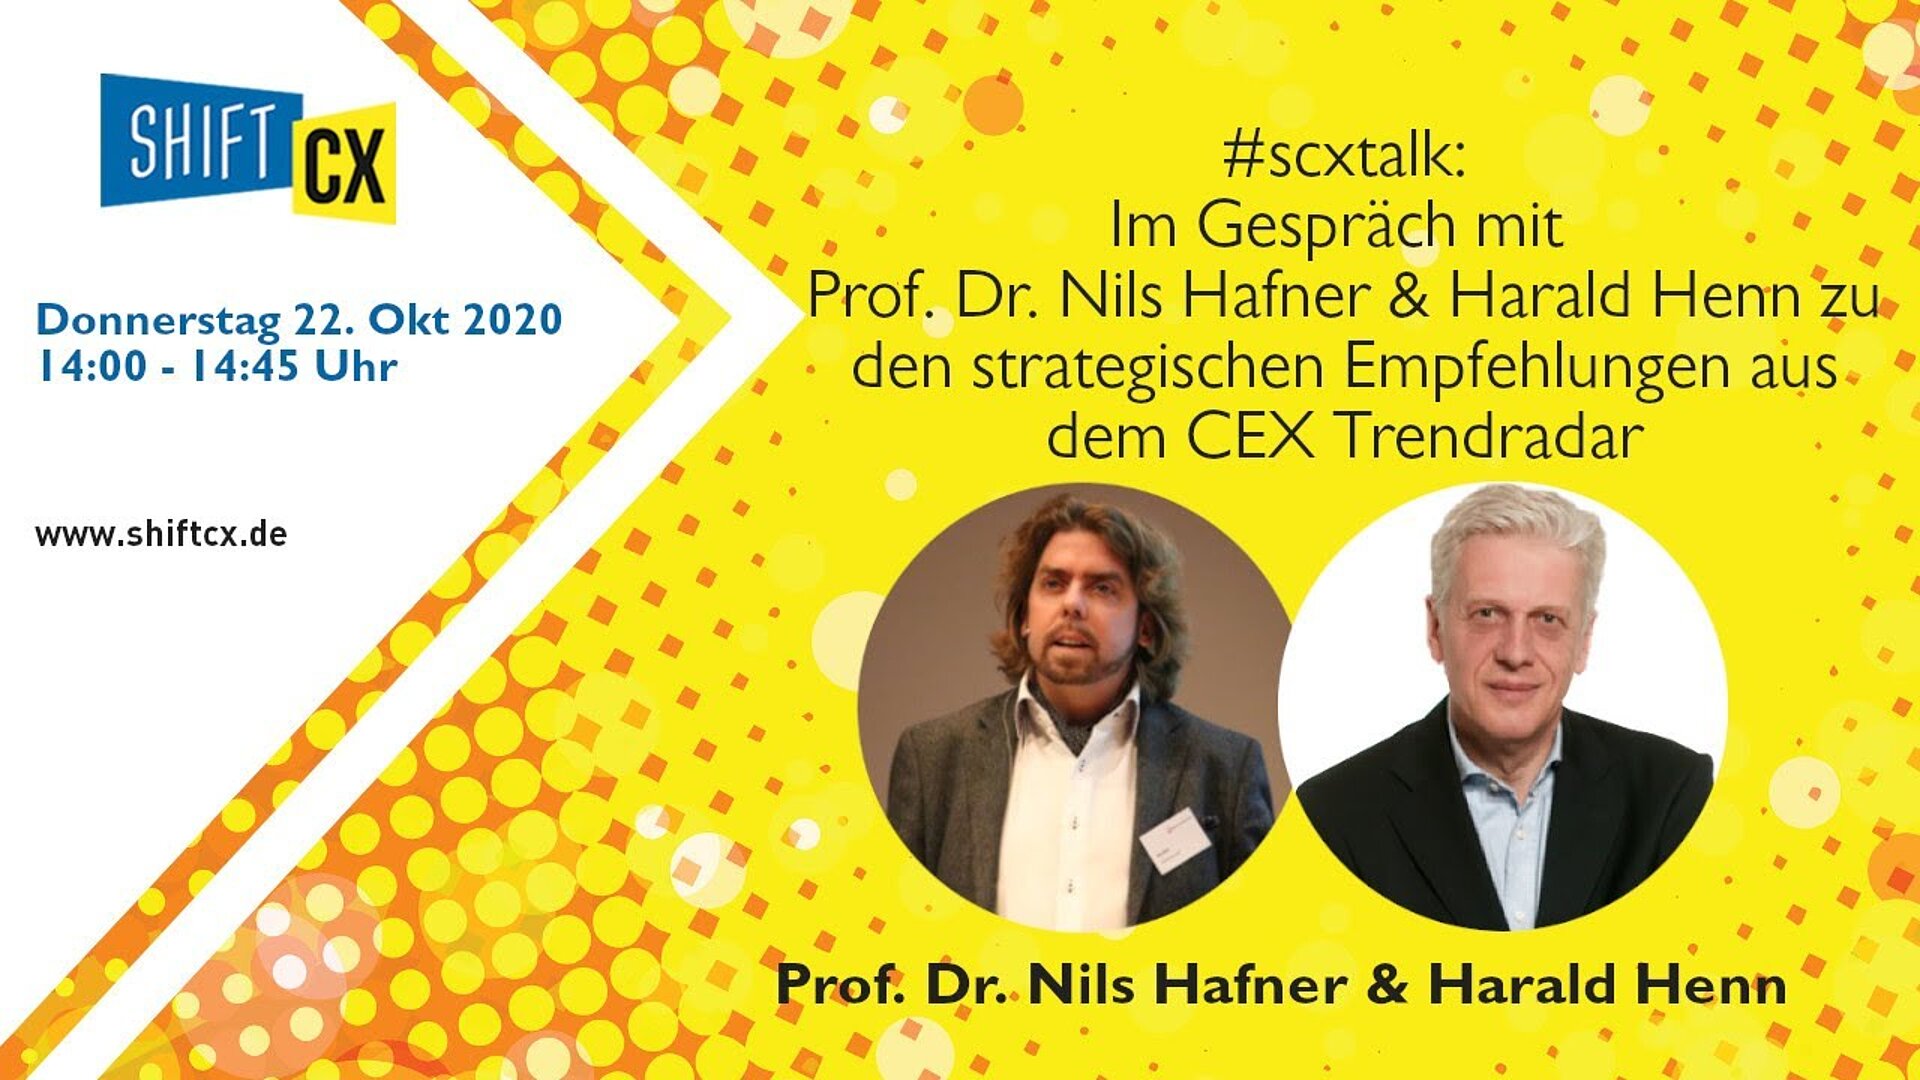 Im Gespräch mit Prof. Dr. Nils Hafner & Harald Henn zu den strategischen Empfehlungen aus dem CEX Trendradar